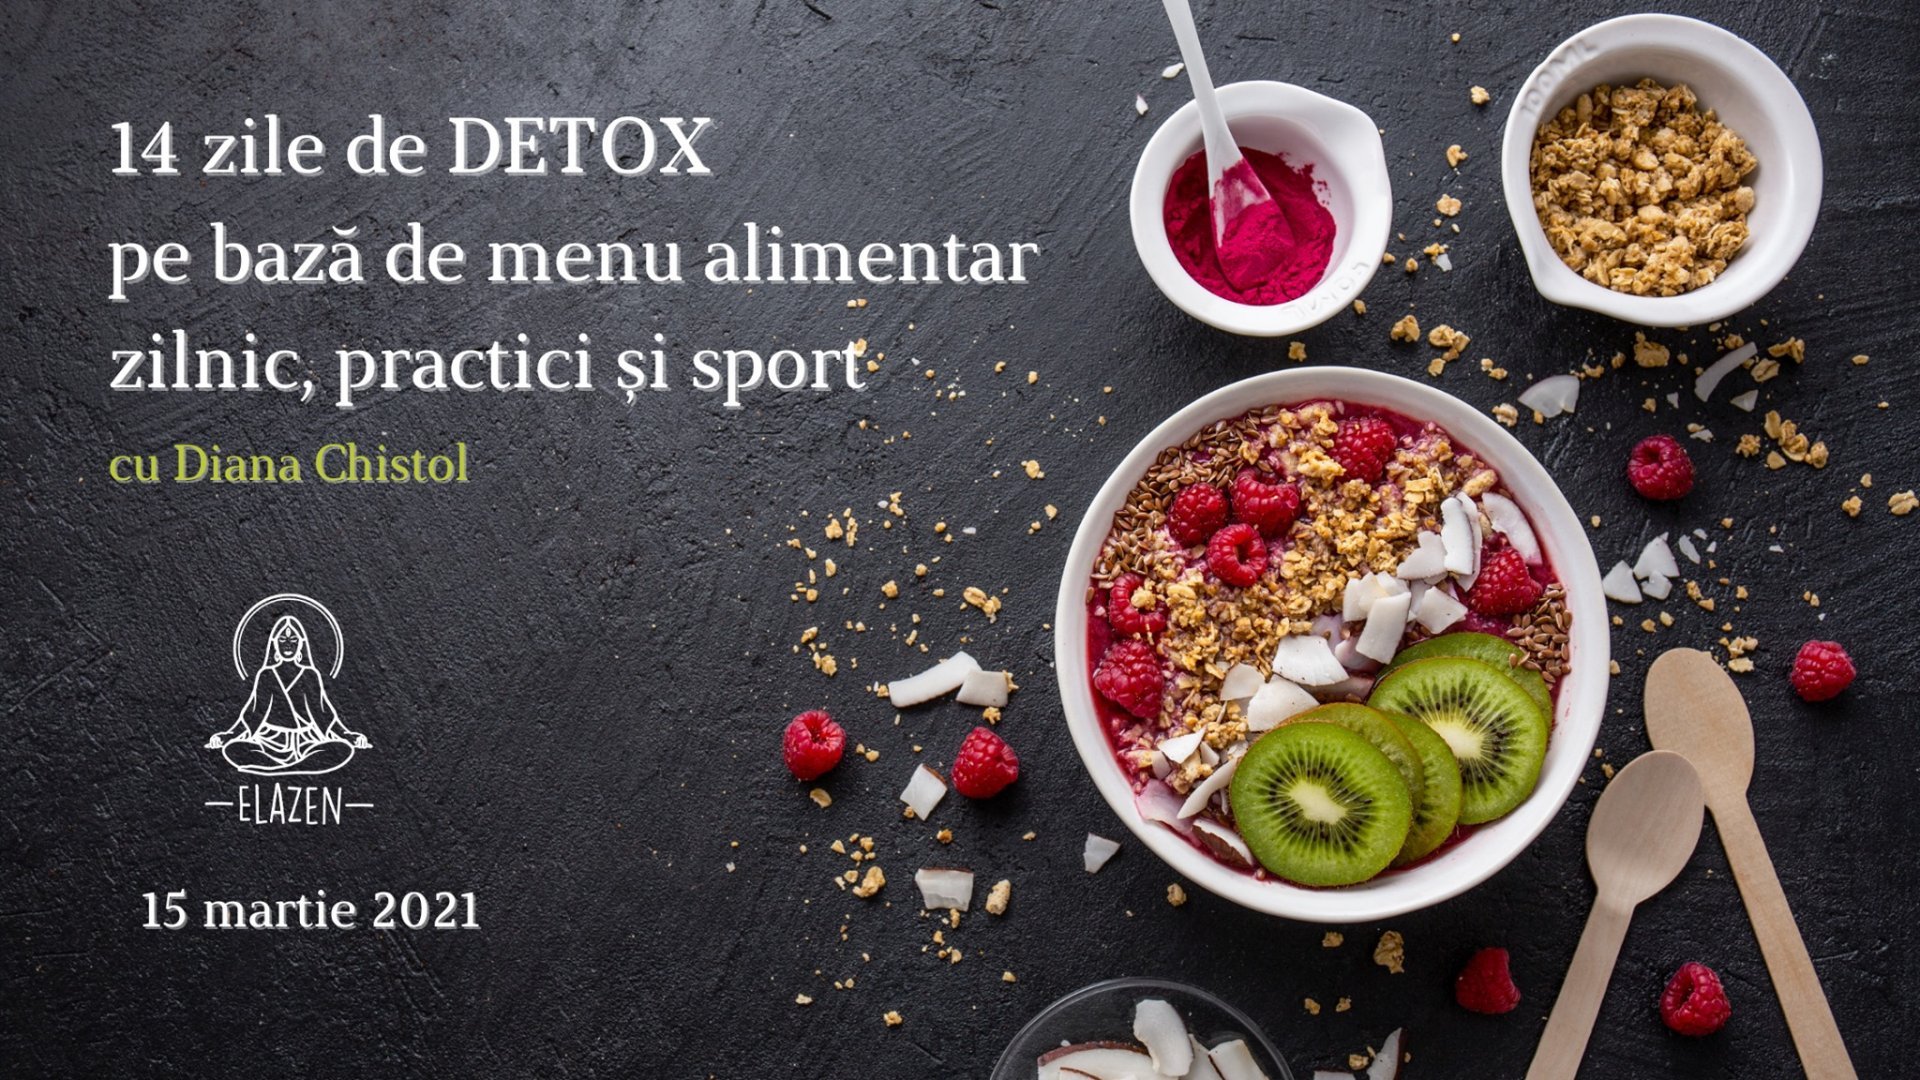 Detox1 cu Diana Chistol - Program Online de Detox | Editia 16